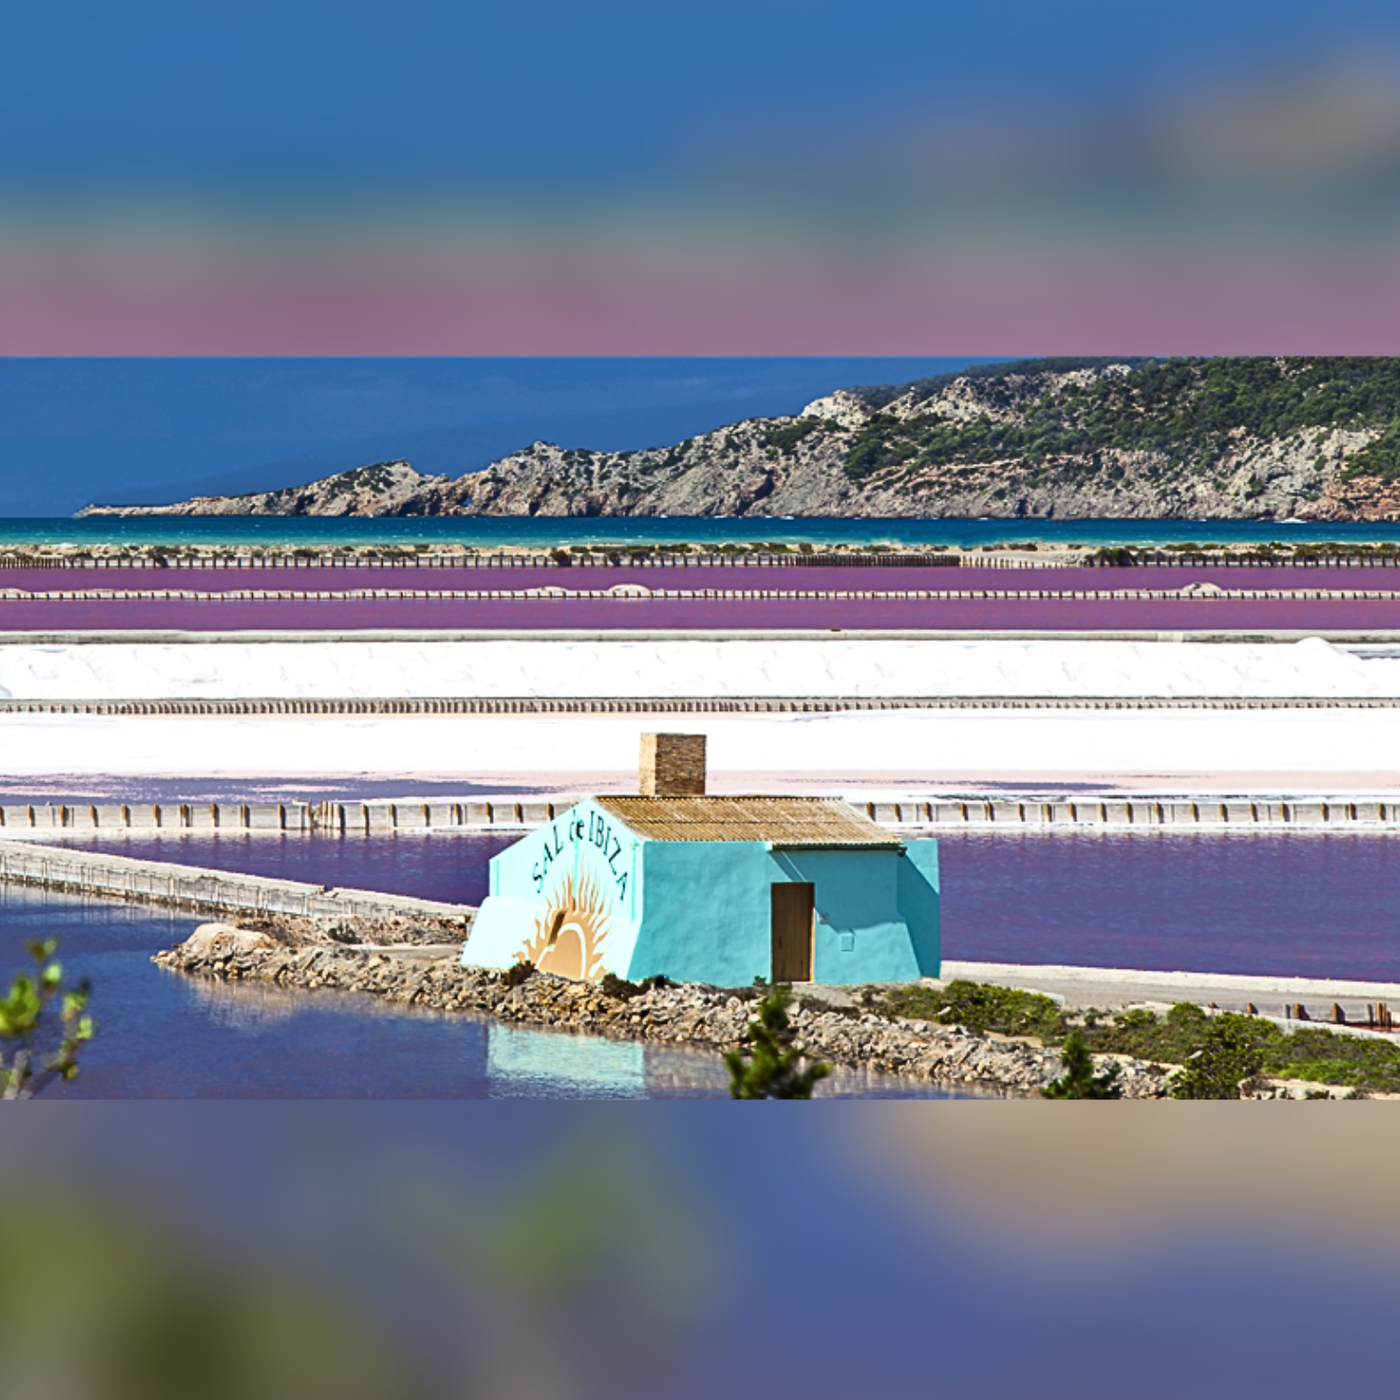 Salzstreuer Zweierpack: Reines Meersalz und Meersalz mit Hibiskus, 125g und 90g